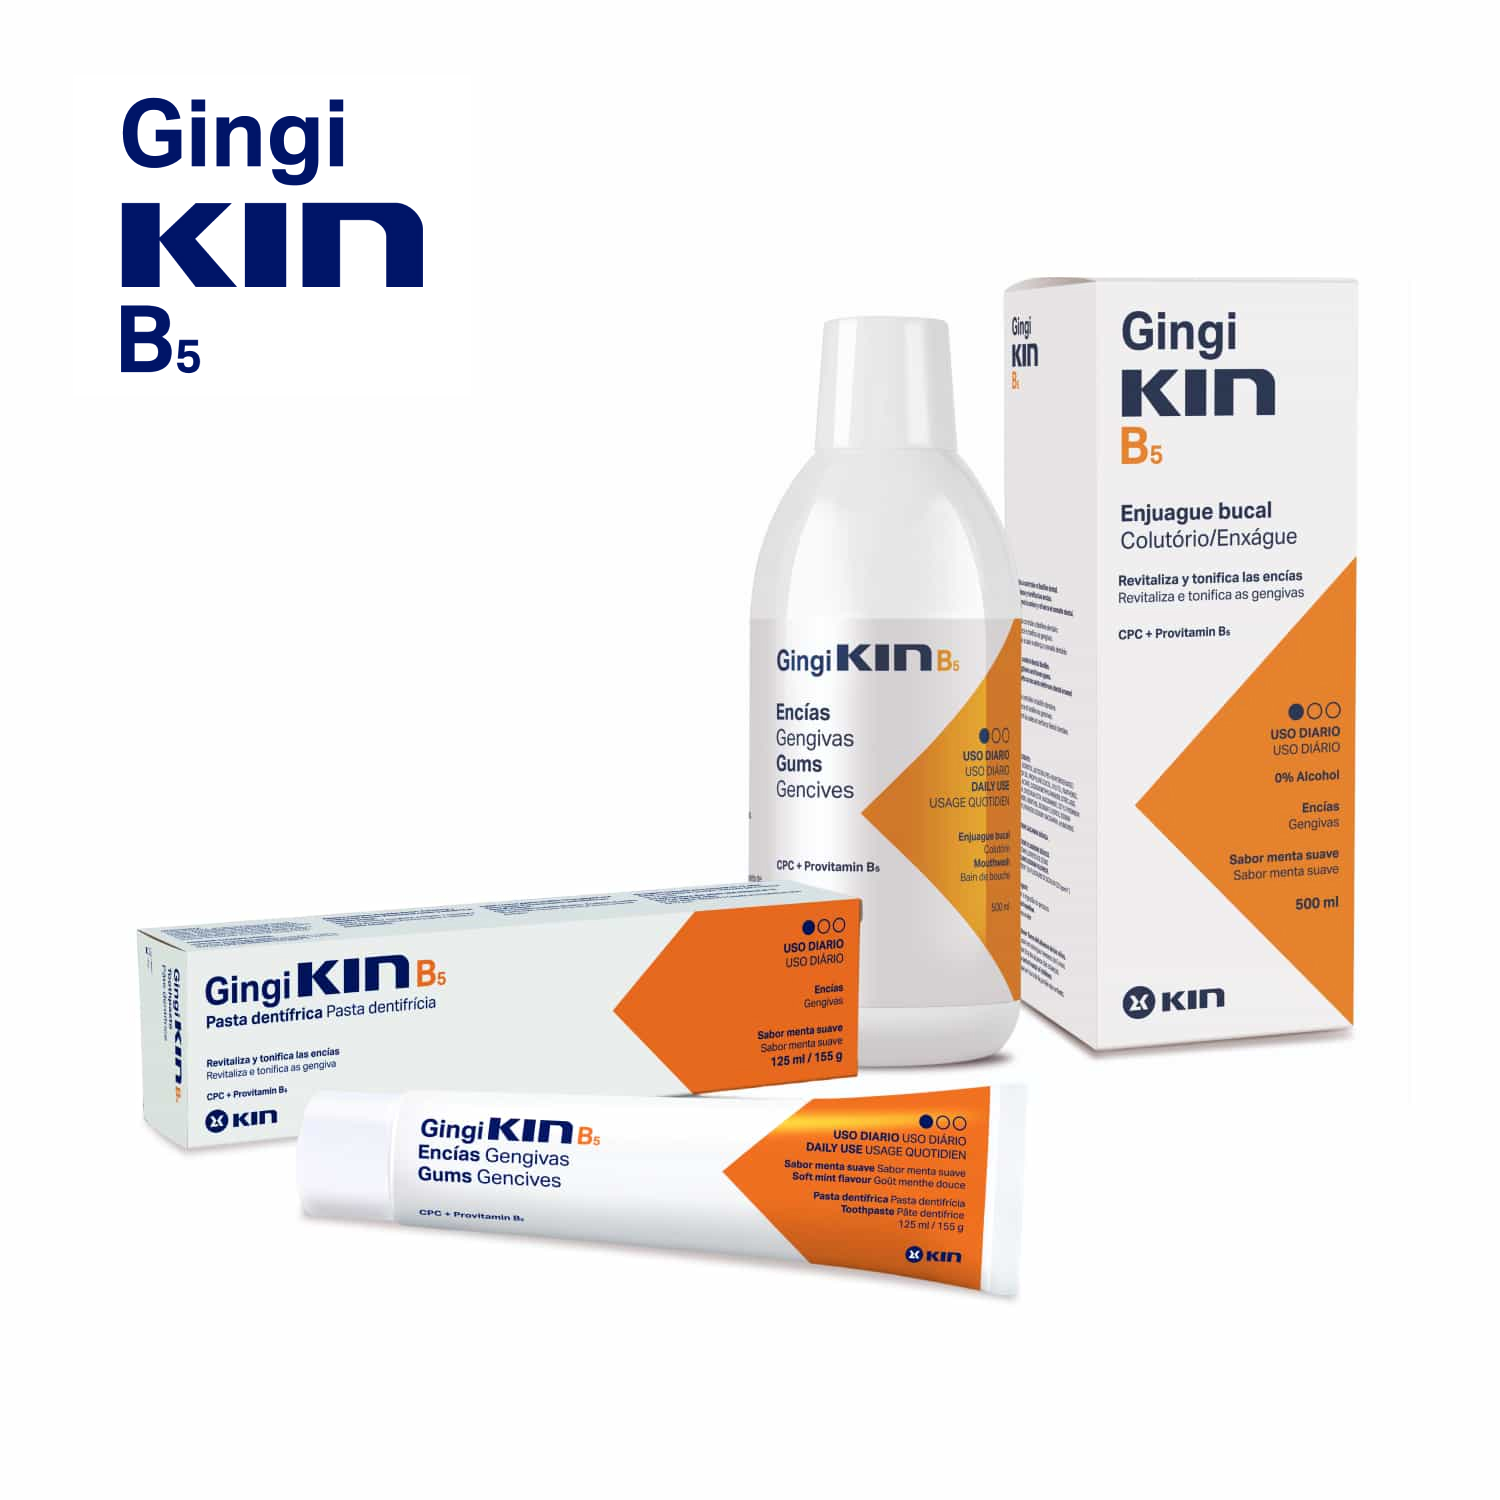 KIN B5 / GingiKIN B5